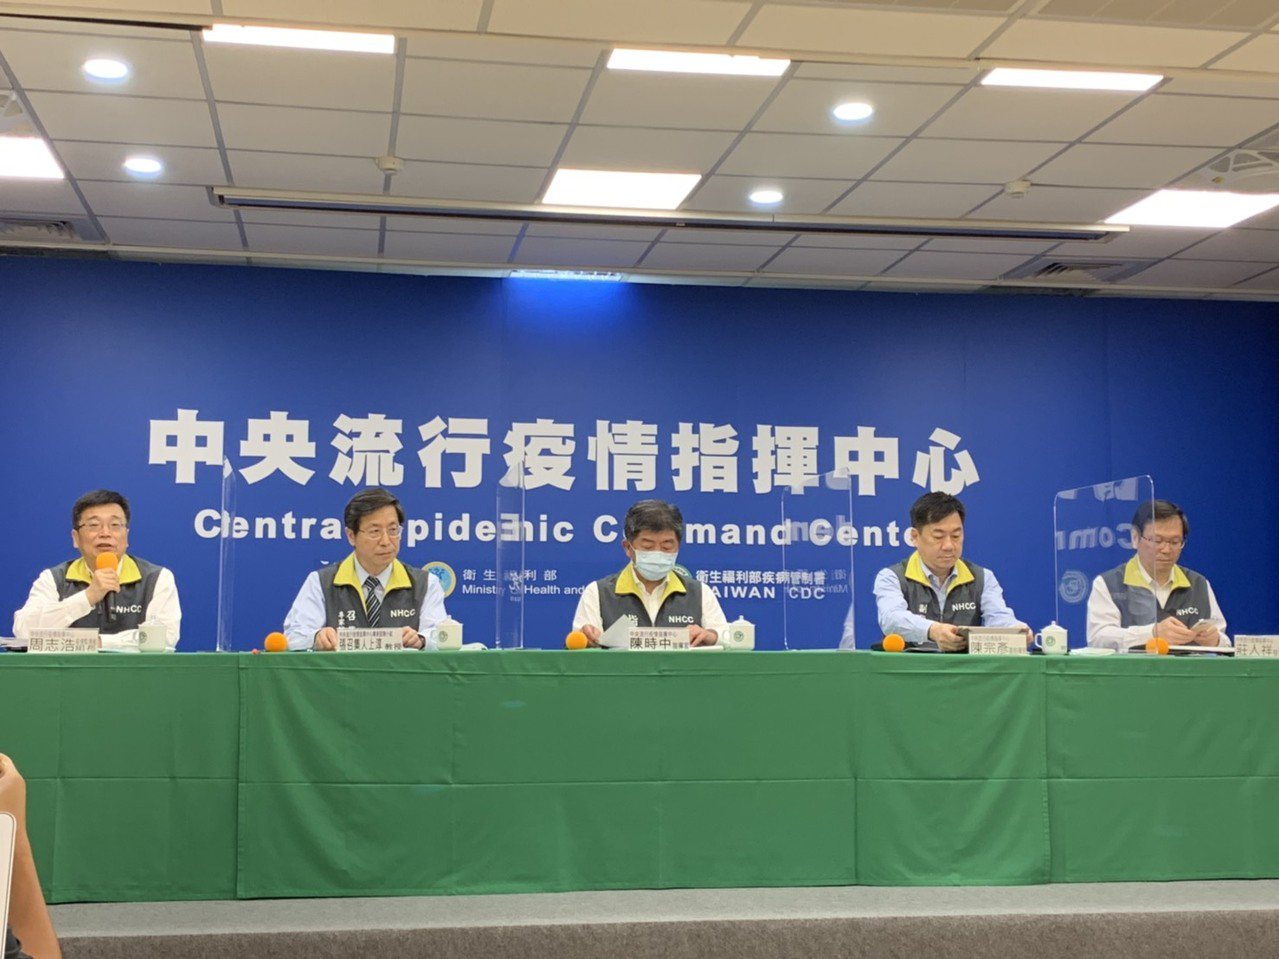 指揮官陳時中表示，藝文活動已可開放，可比照「台北市立交響樂團」模式，作為藝文展演開放指引。